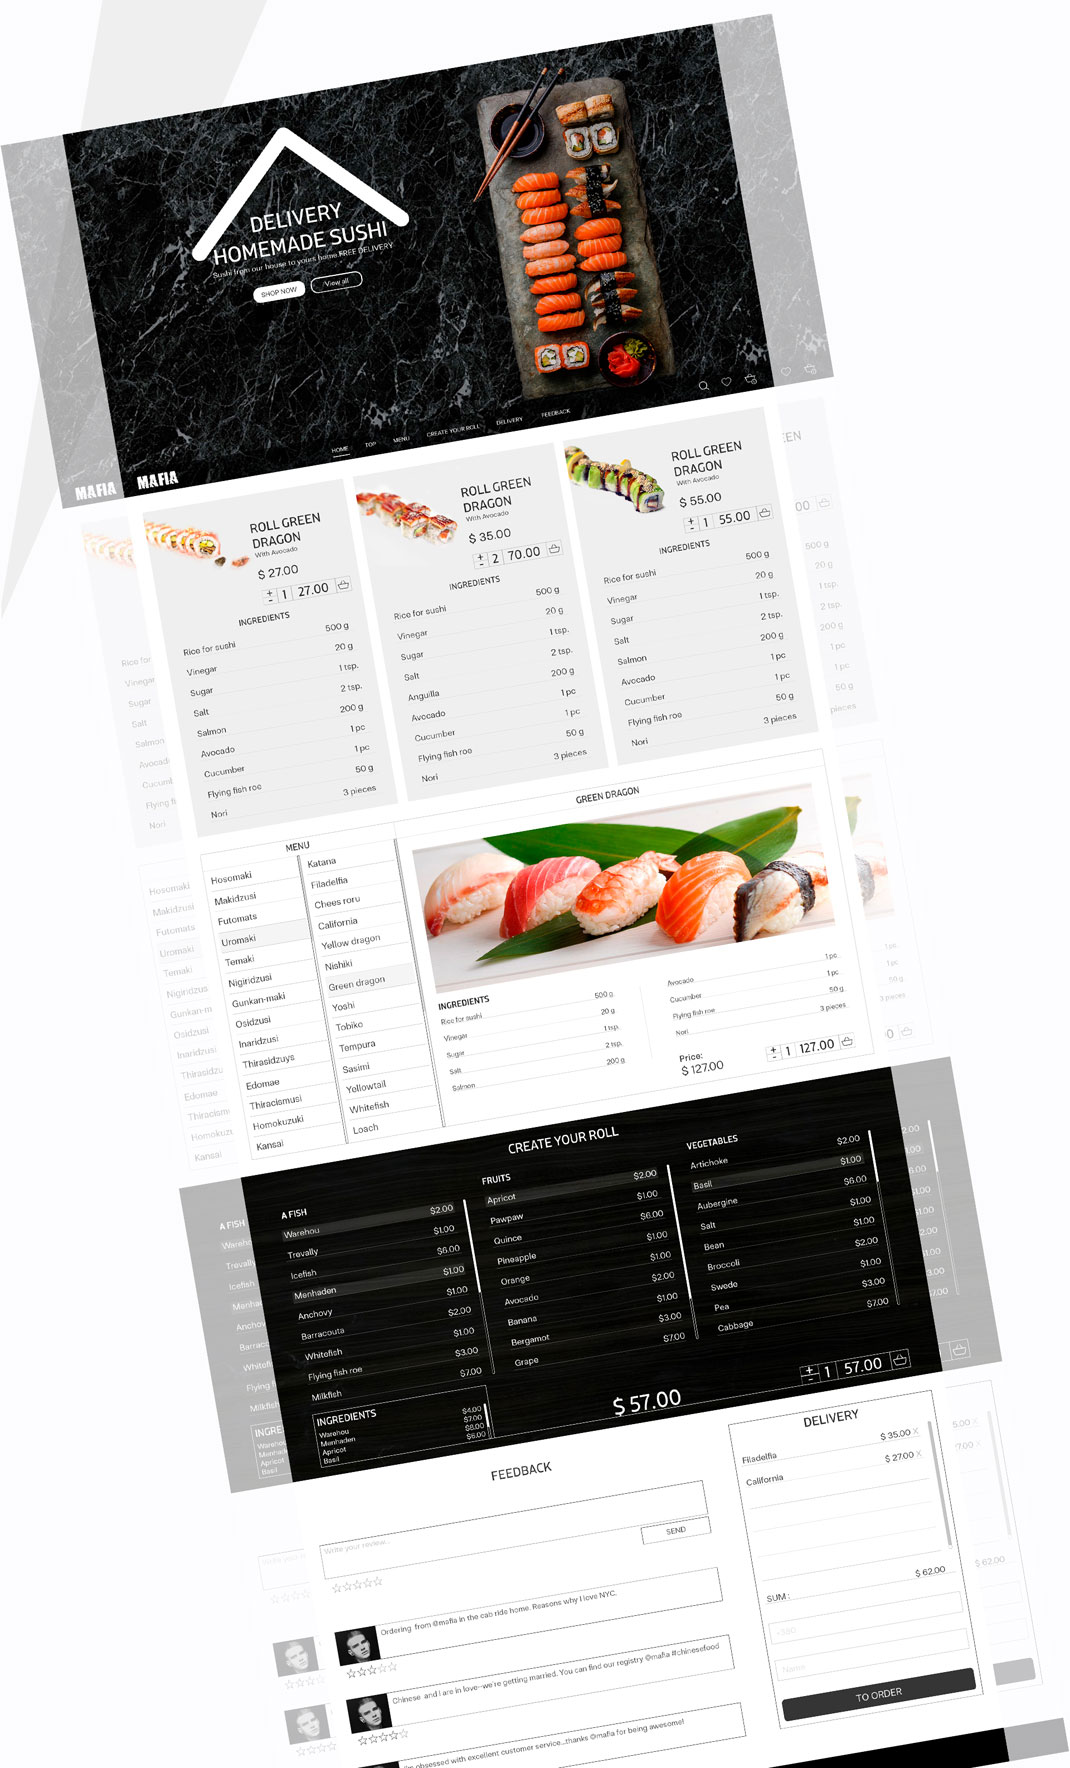 餐厅设计,餐厅VI设计,餐厅logo设计,深圳餐厅VI设计公司,北京,上海,广州,视觉餐饮